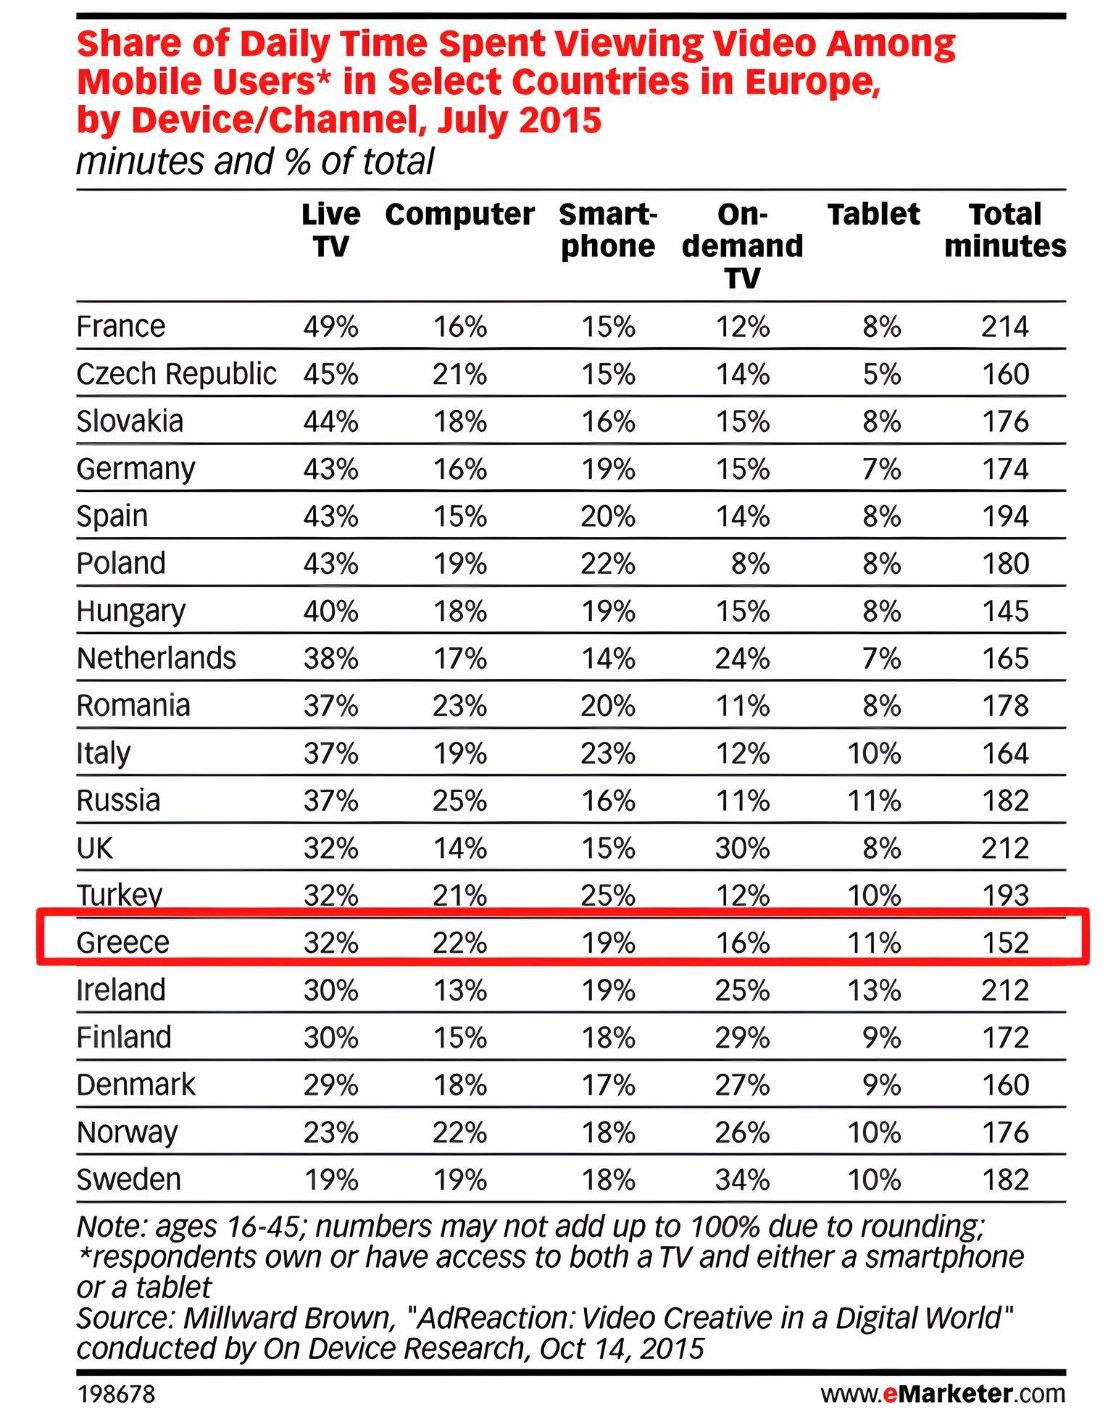 Οι Έλληνες χρήστες κινητών συσκευών καταναλώνουν το 52% του χρόνου που βλέπουν video σε ψηφιακές συσκευές.